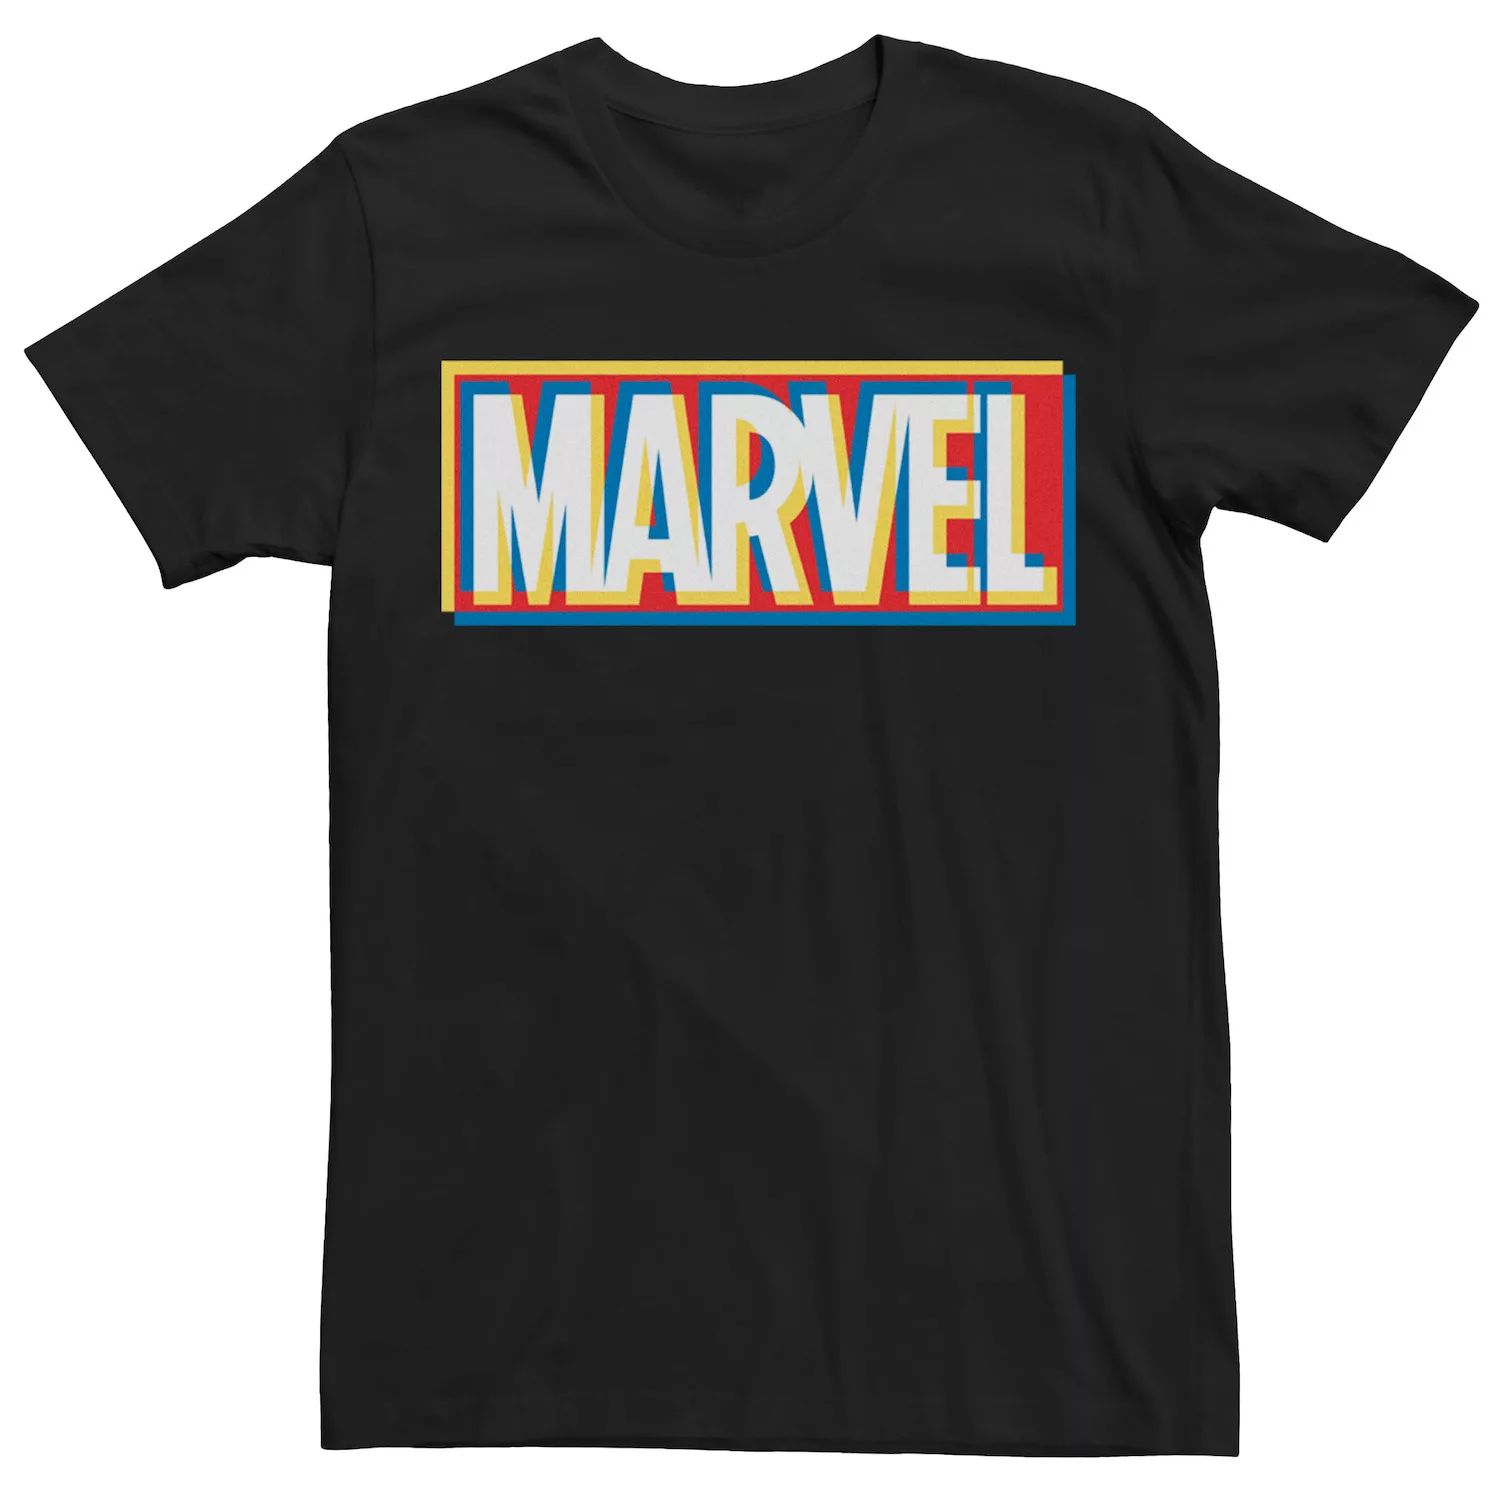 мужская классическая футболка с графическим логотипом marvel Мужская футболка с графическим логотипом Marvel Trippy